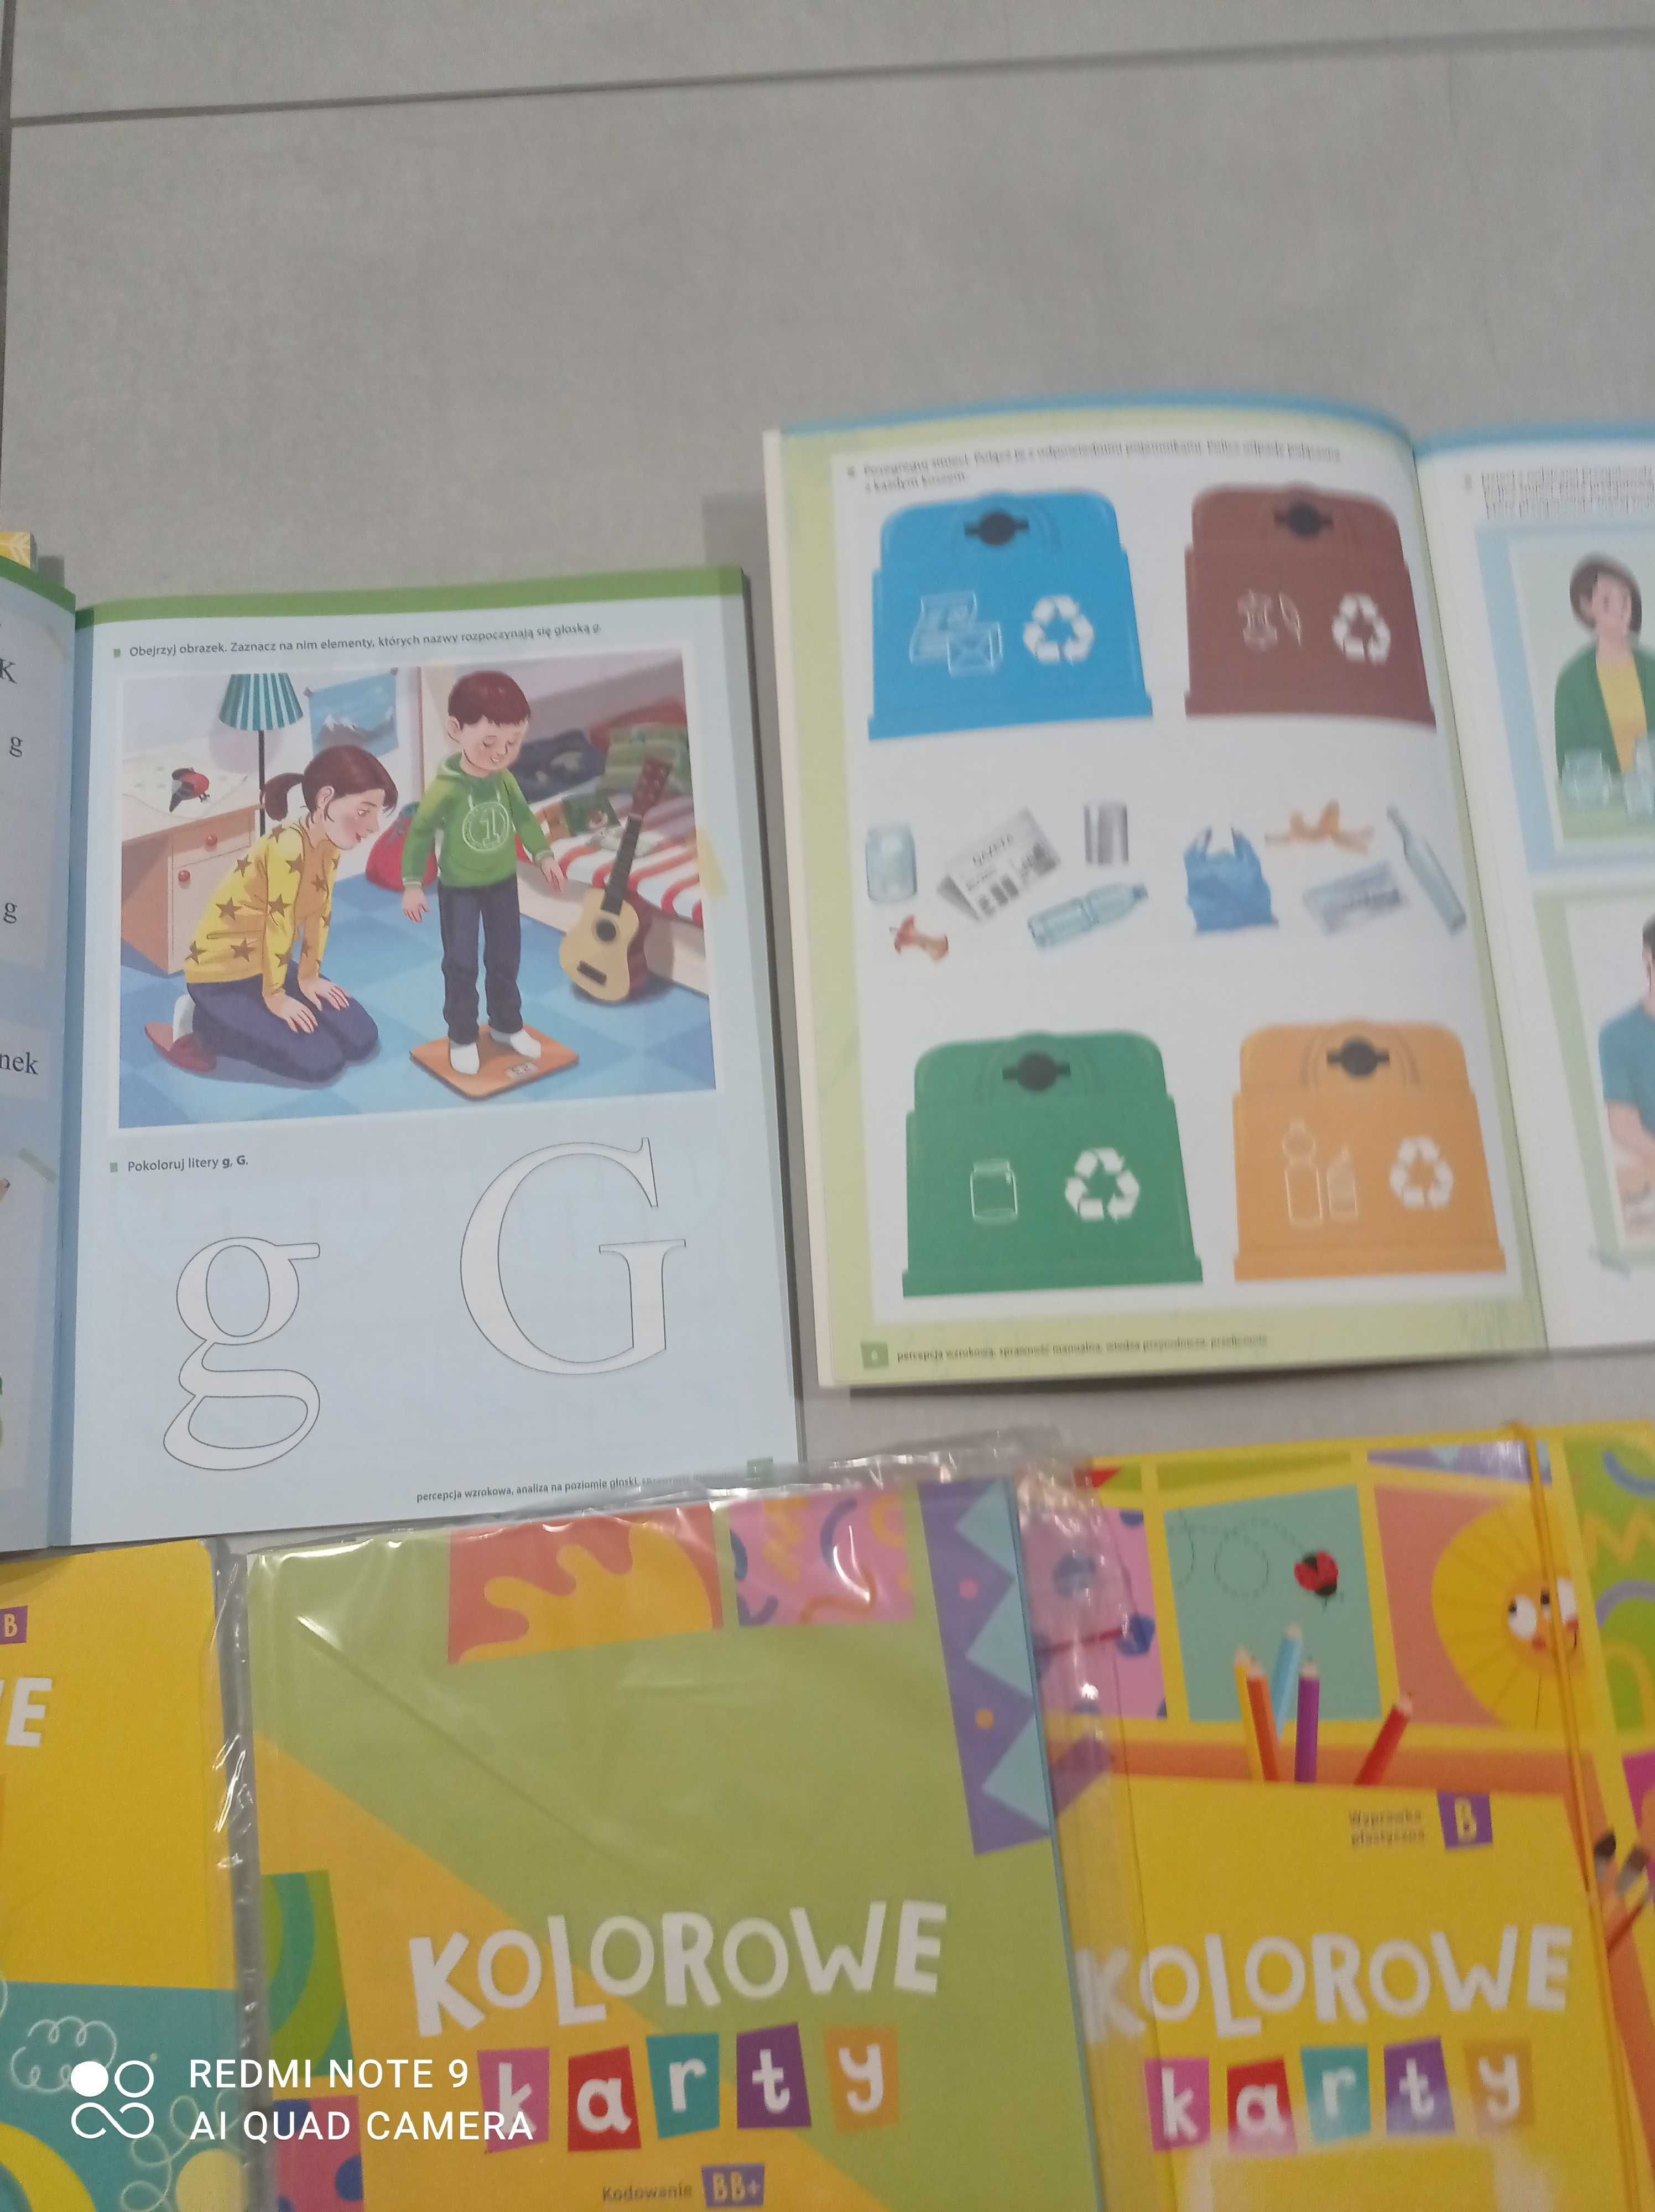 Kolorowe karty książki dla dzieci